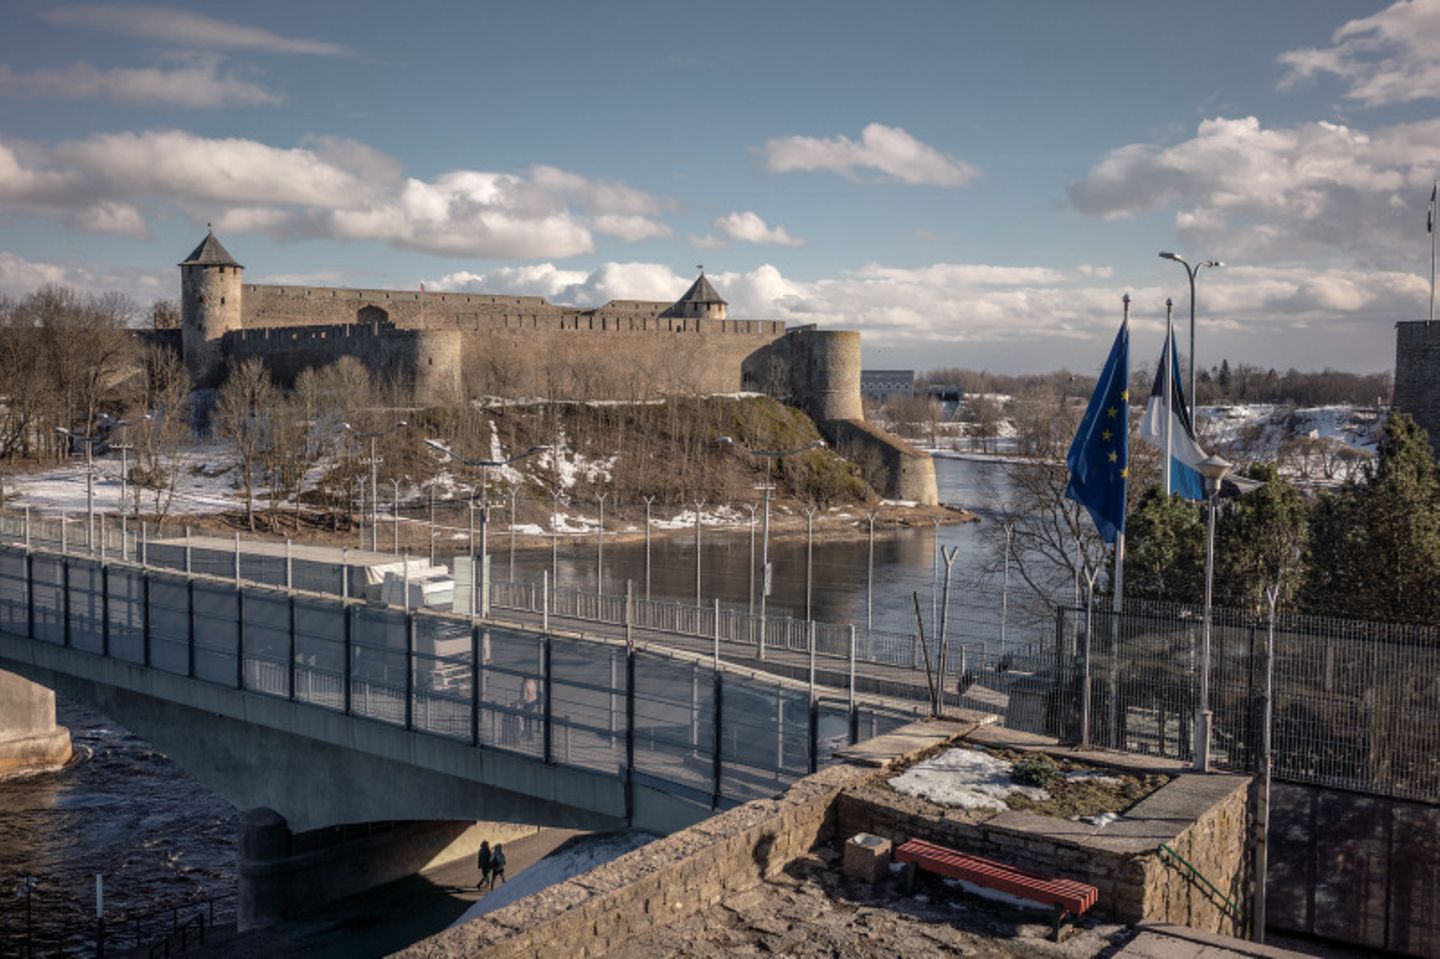 Noch verbindet eine Brücke die Stadt Narva in Estland mit dem gegenüberliegenden russischen Ufer, wo die Festung Iwangorod die Flussbiegung bewacht